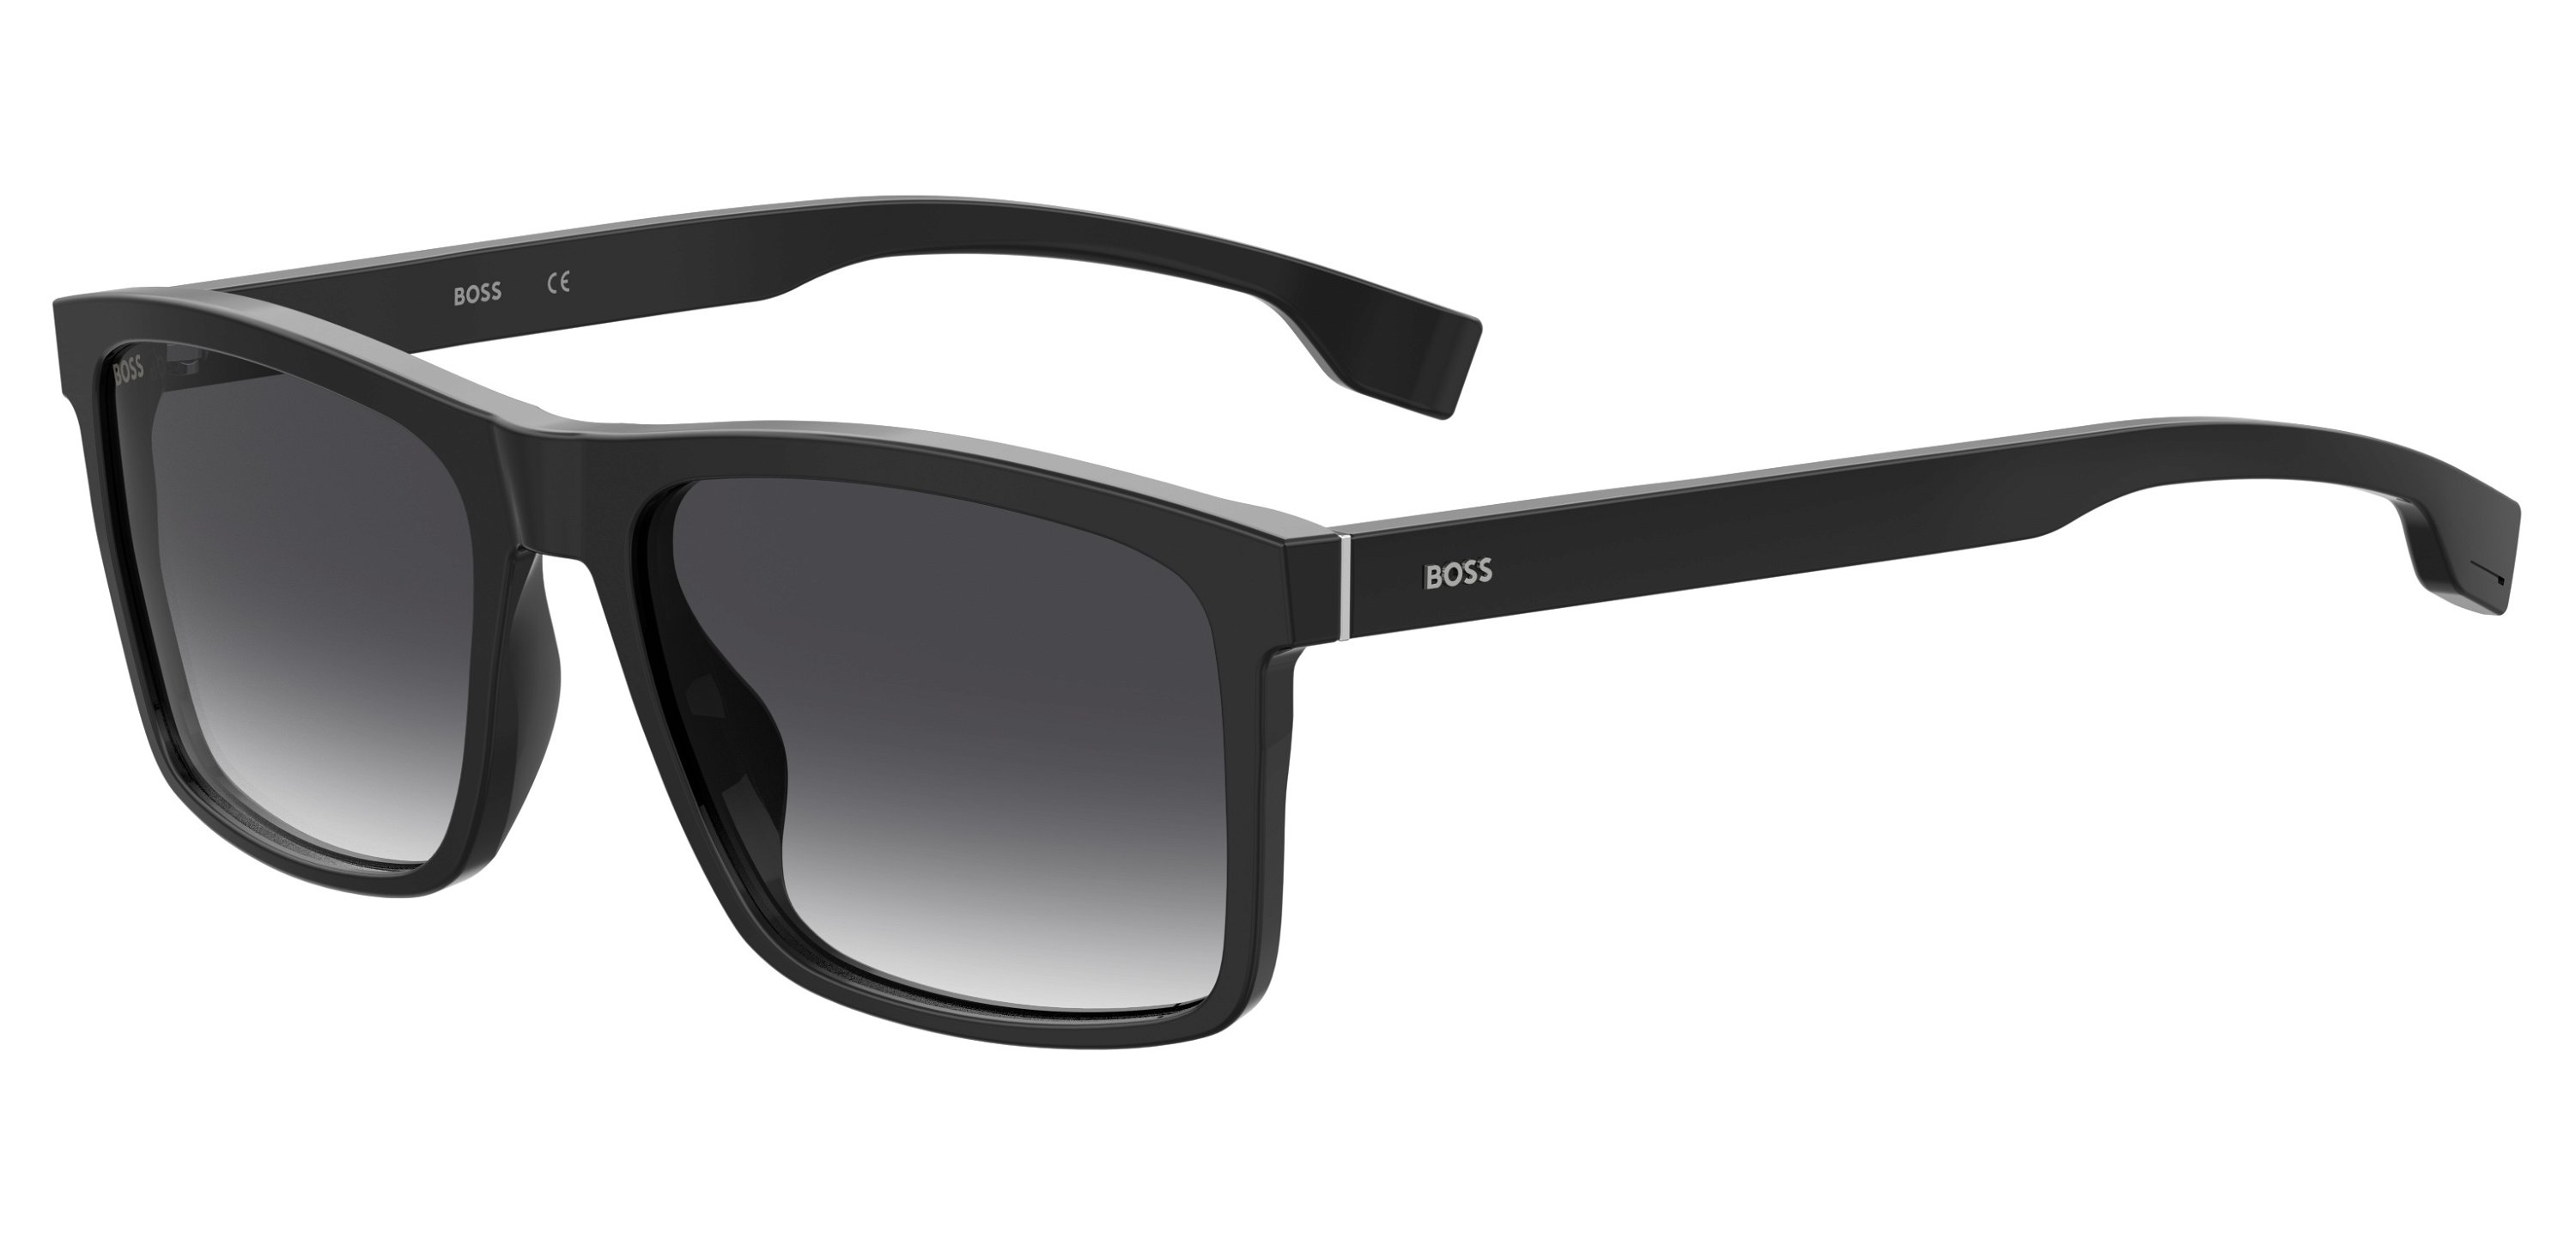 Das Bild zeigt die Sonnenbrille 1036S 807 von der Marke Boss in schwarz.